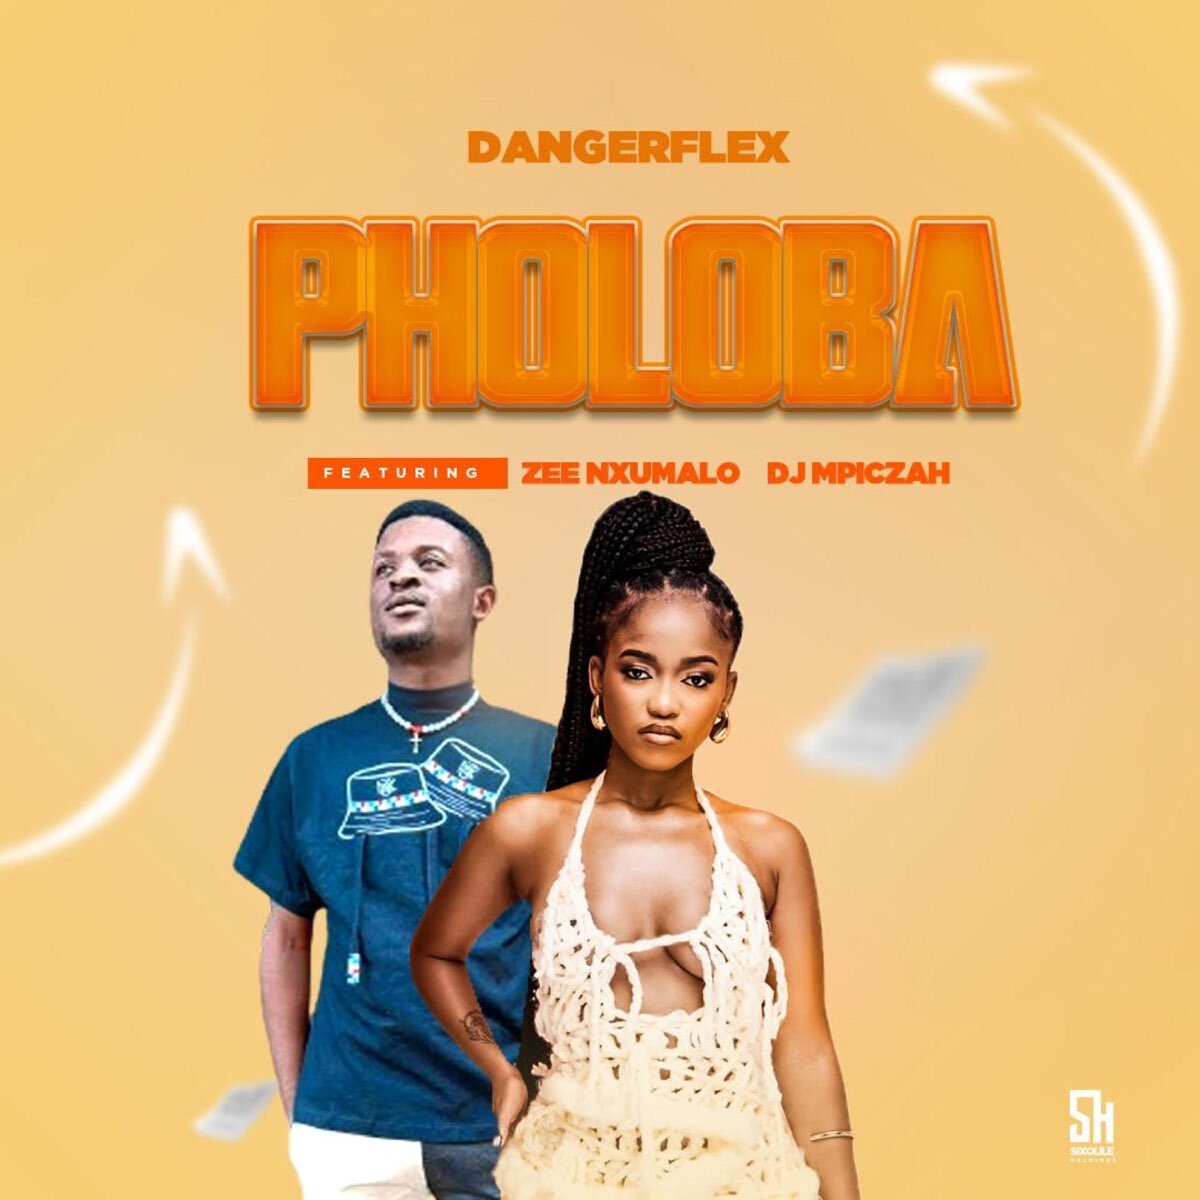 Pholoba - Zee Nxumalo & Dangerflex@Bolomp3.com